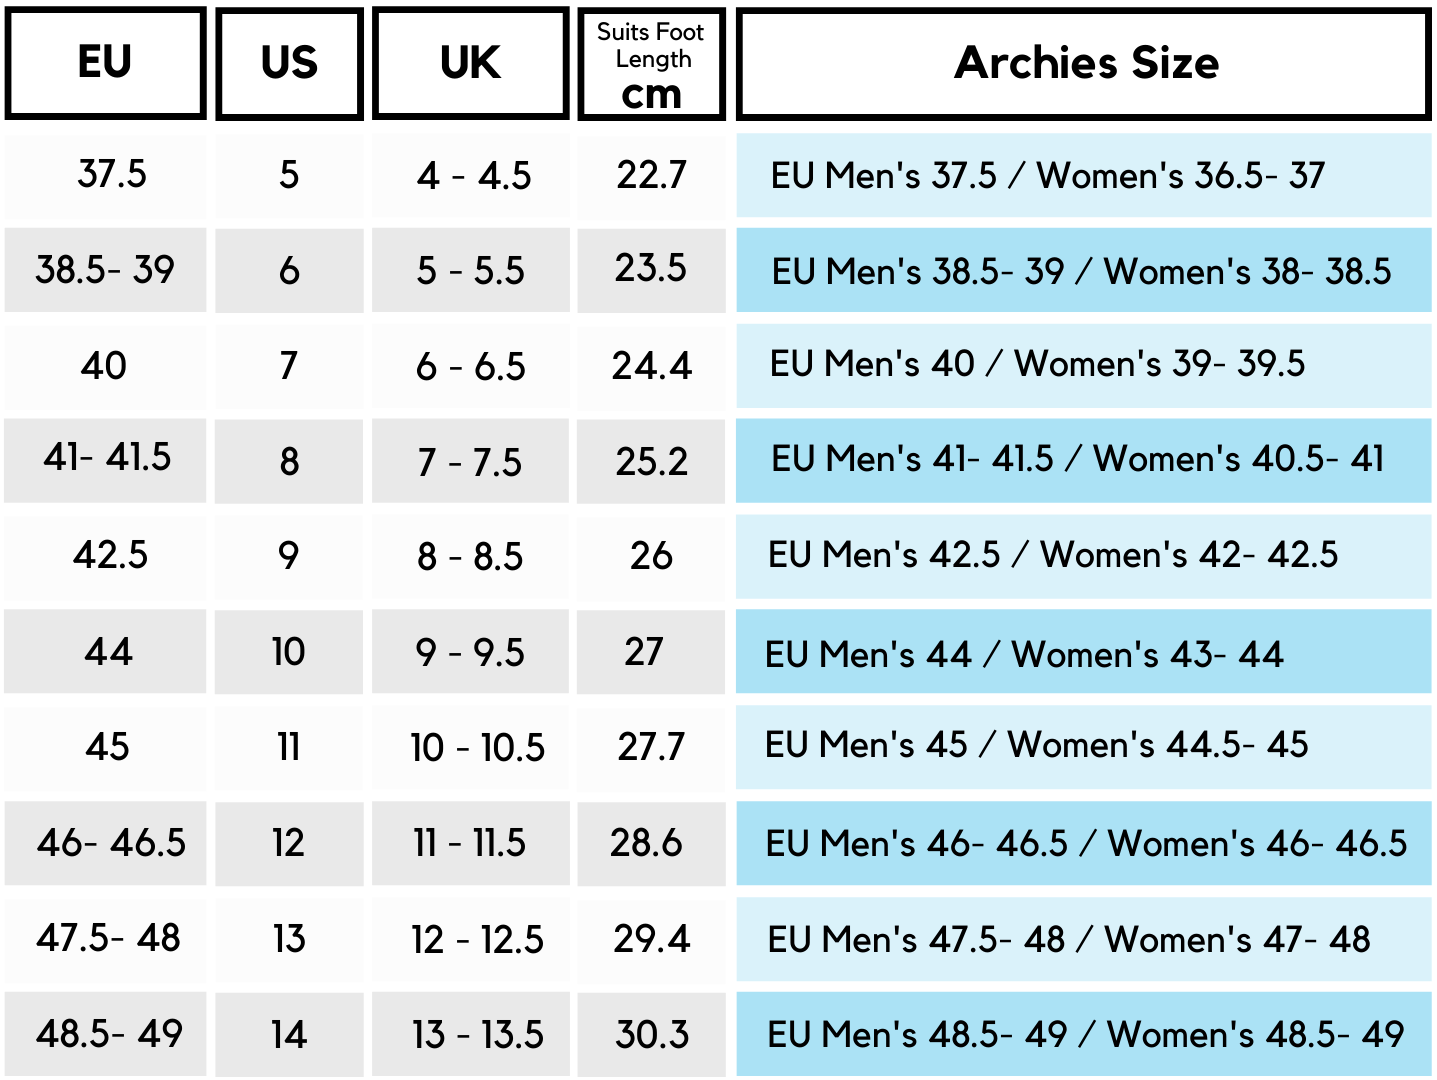 EU Archies Men's Size Chart